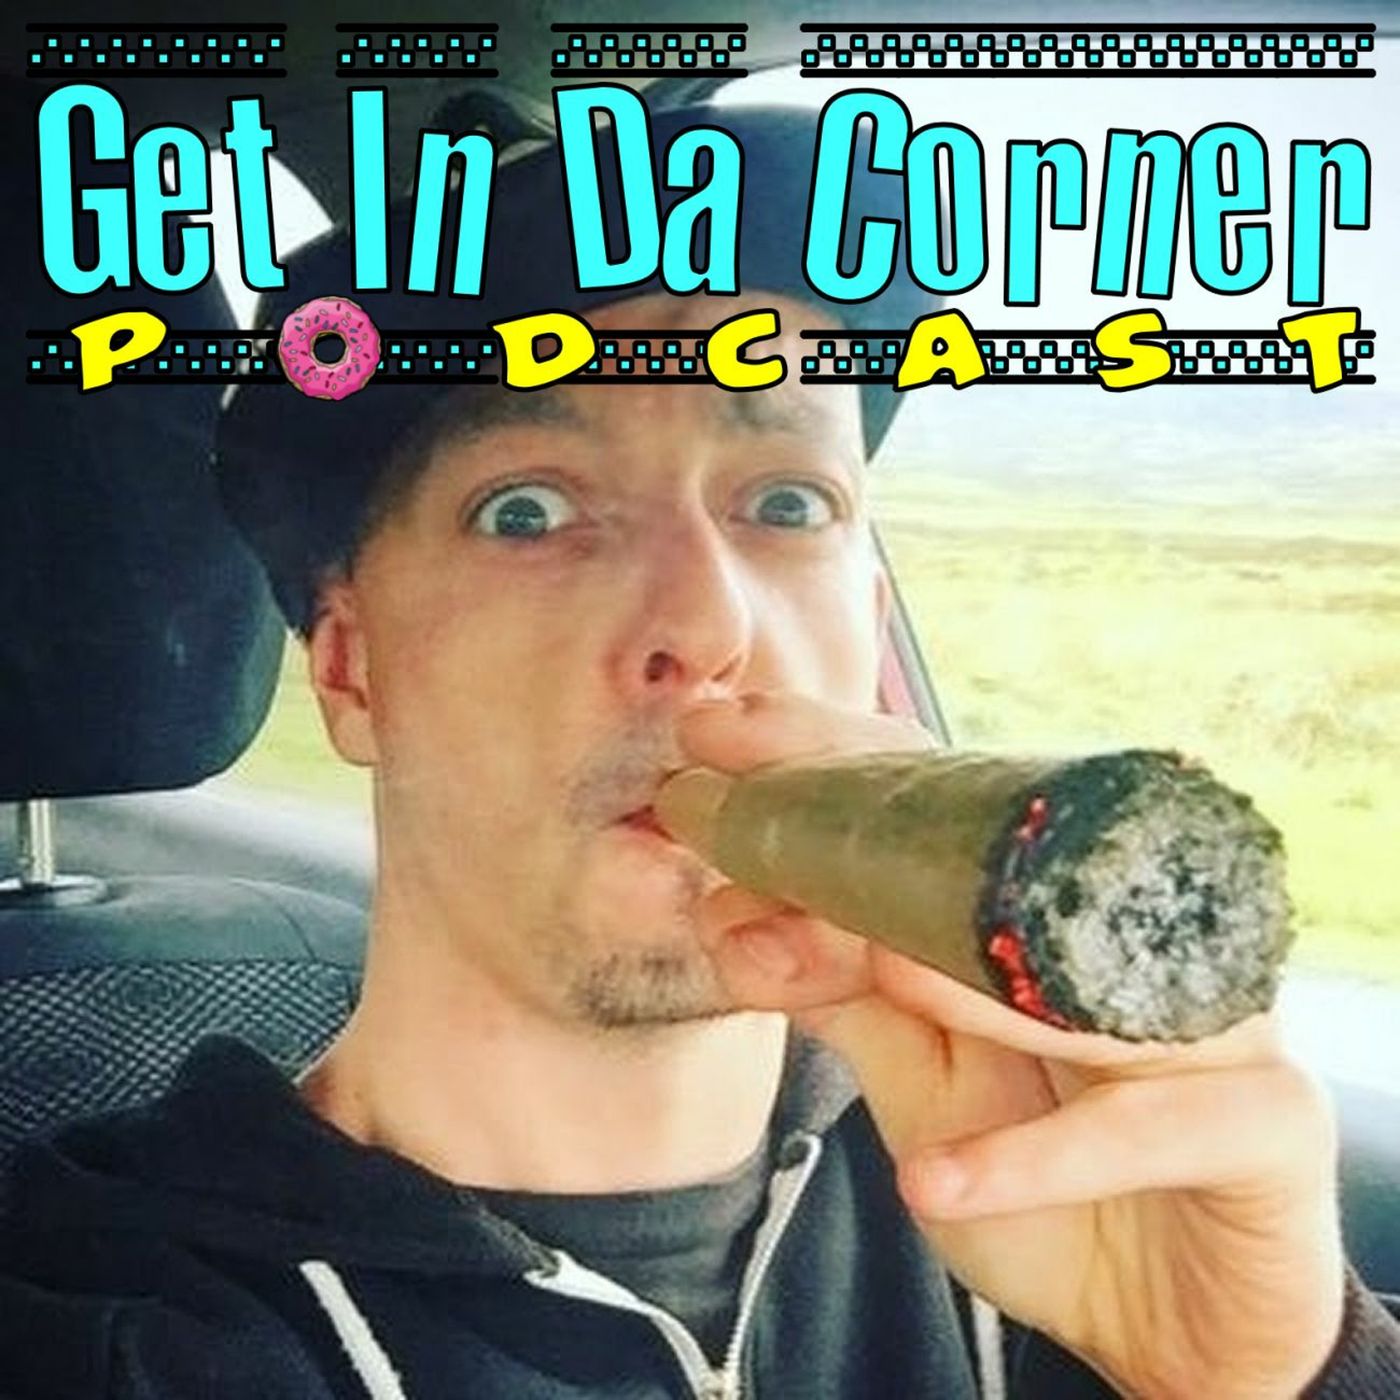 MC Burberry is IN DA Corner FULL SHOW - Get In Da Corner podcast 385